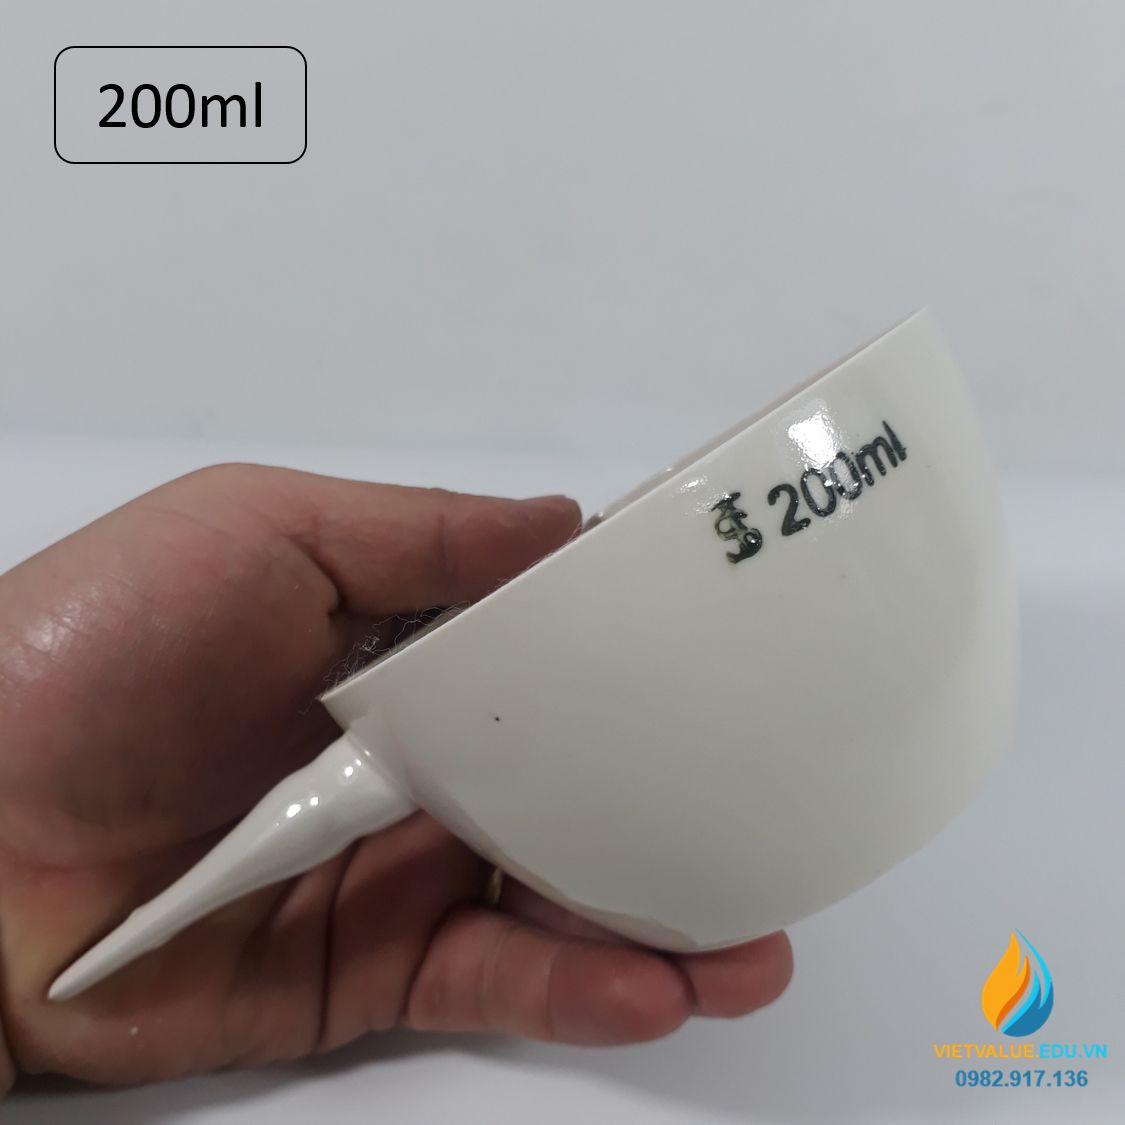 Bát sứ nung mẫu dung tích 200ml, có tay cầm, bát sứ chịu nhiệt độ cao phòng thí nghiệm